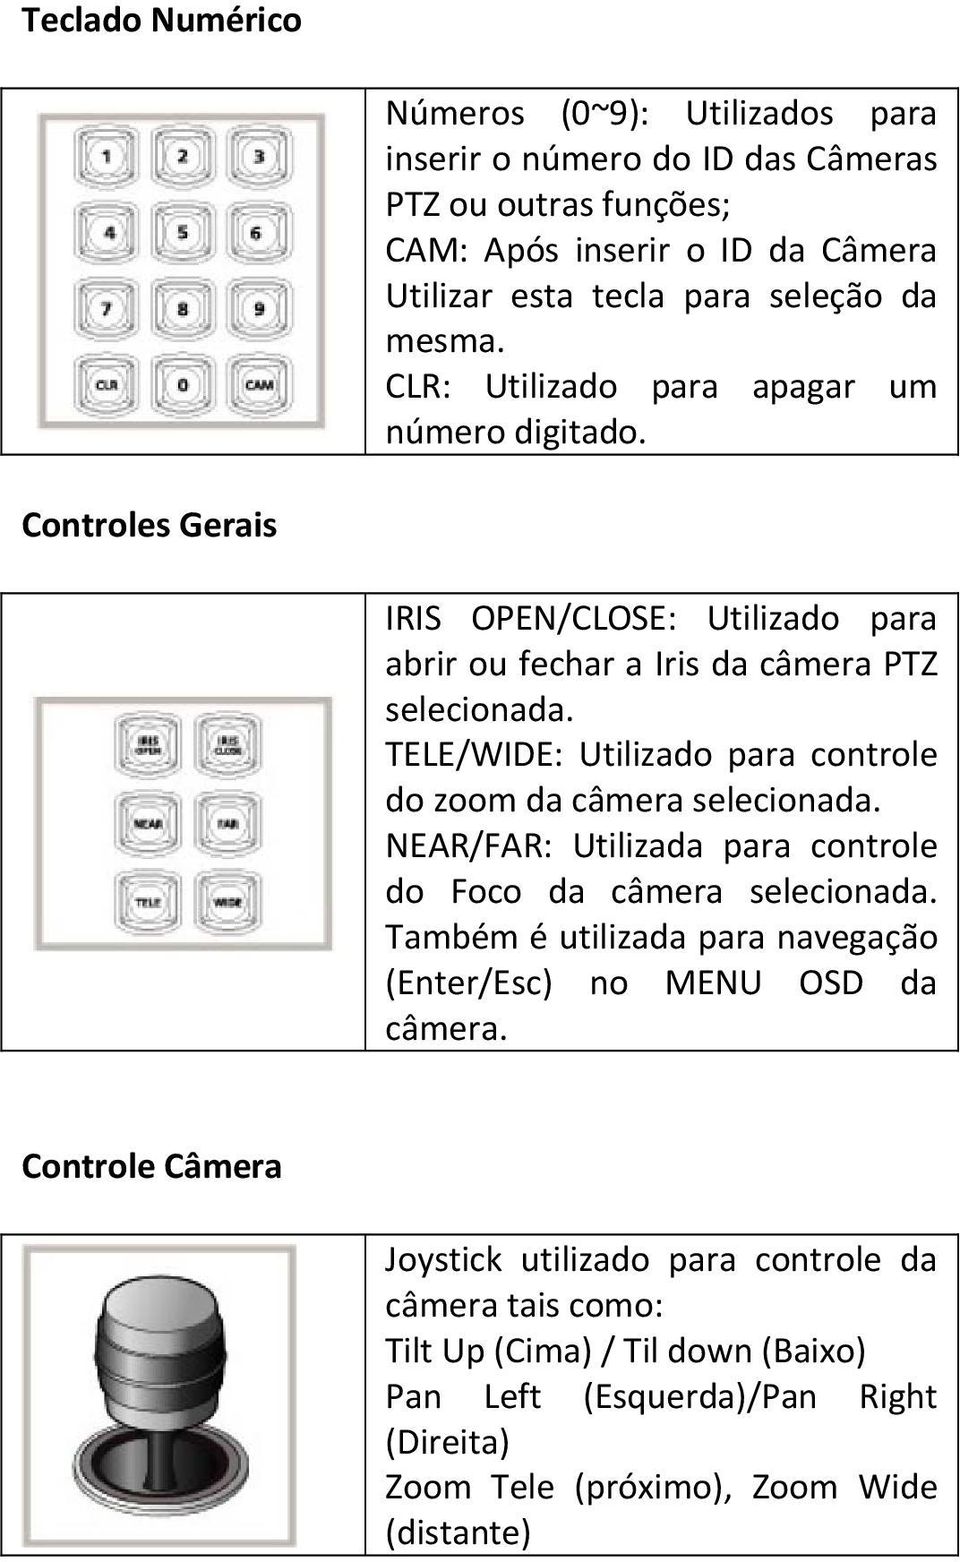 TELE/WIDE: Utilizado para controle do zoom da câmera selecionada. NEAR/FAR: Utilizada para controle do Foco da câmera selecionada.